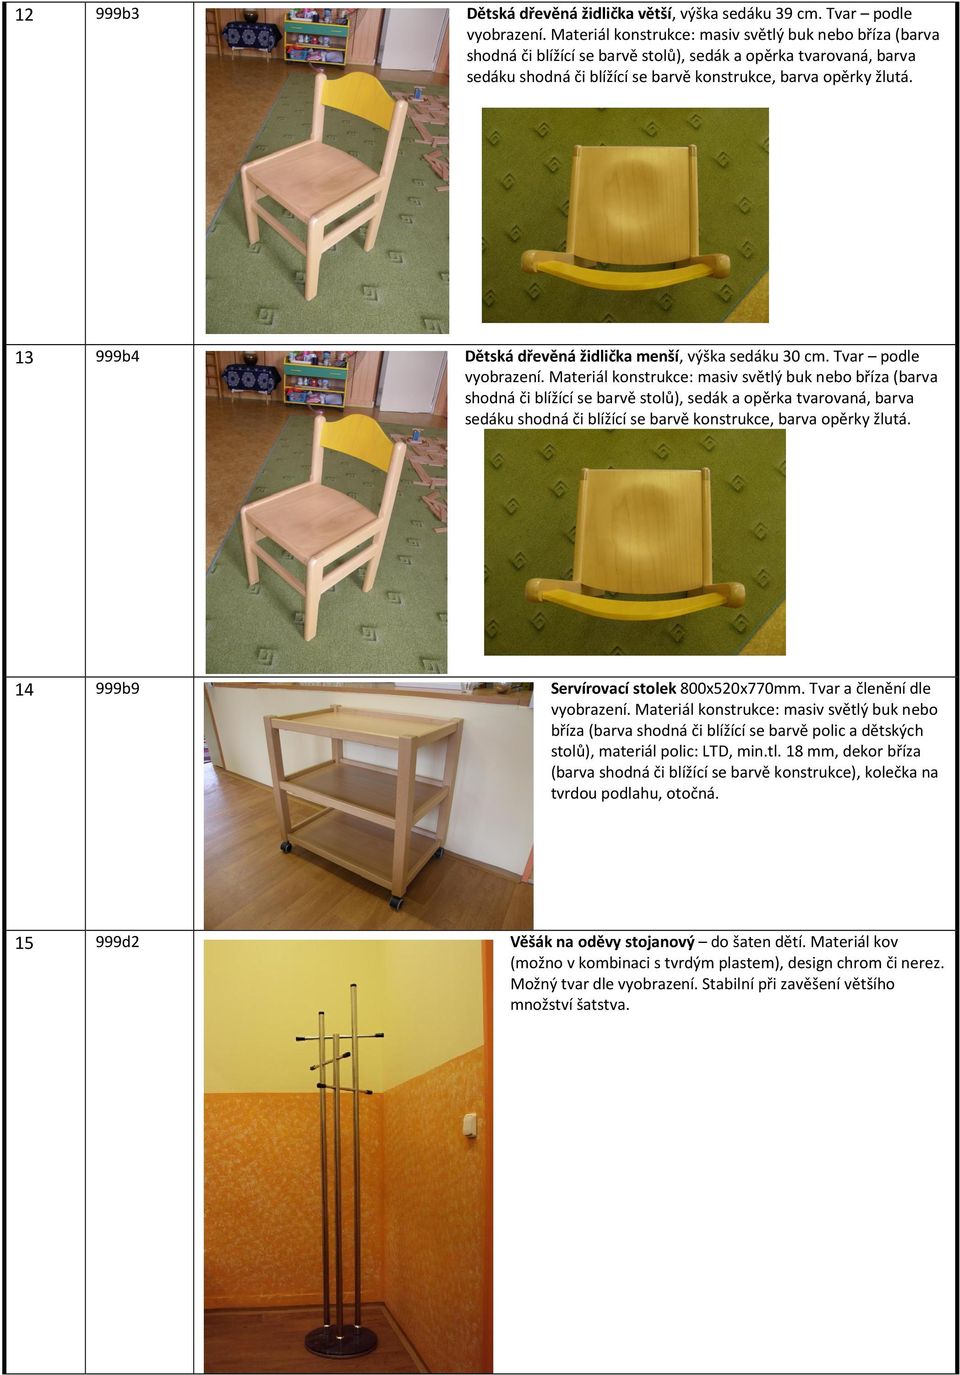 13 999b4 Dětská dřevěná židlička menší, výška sedáku 30 cm. Tvar podle vyobrazení.  14 999b9 Servírovací stolek 800x520x770mm. Tvar a členění dle vyobrazení.